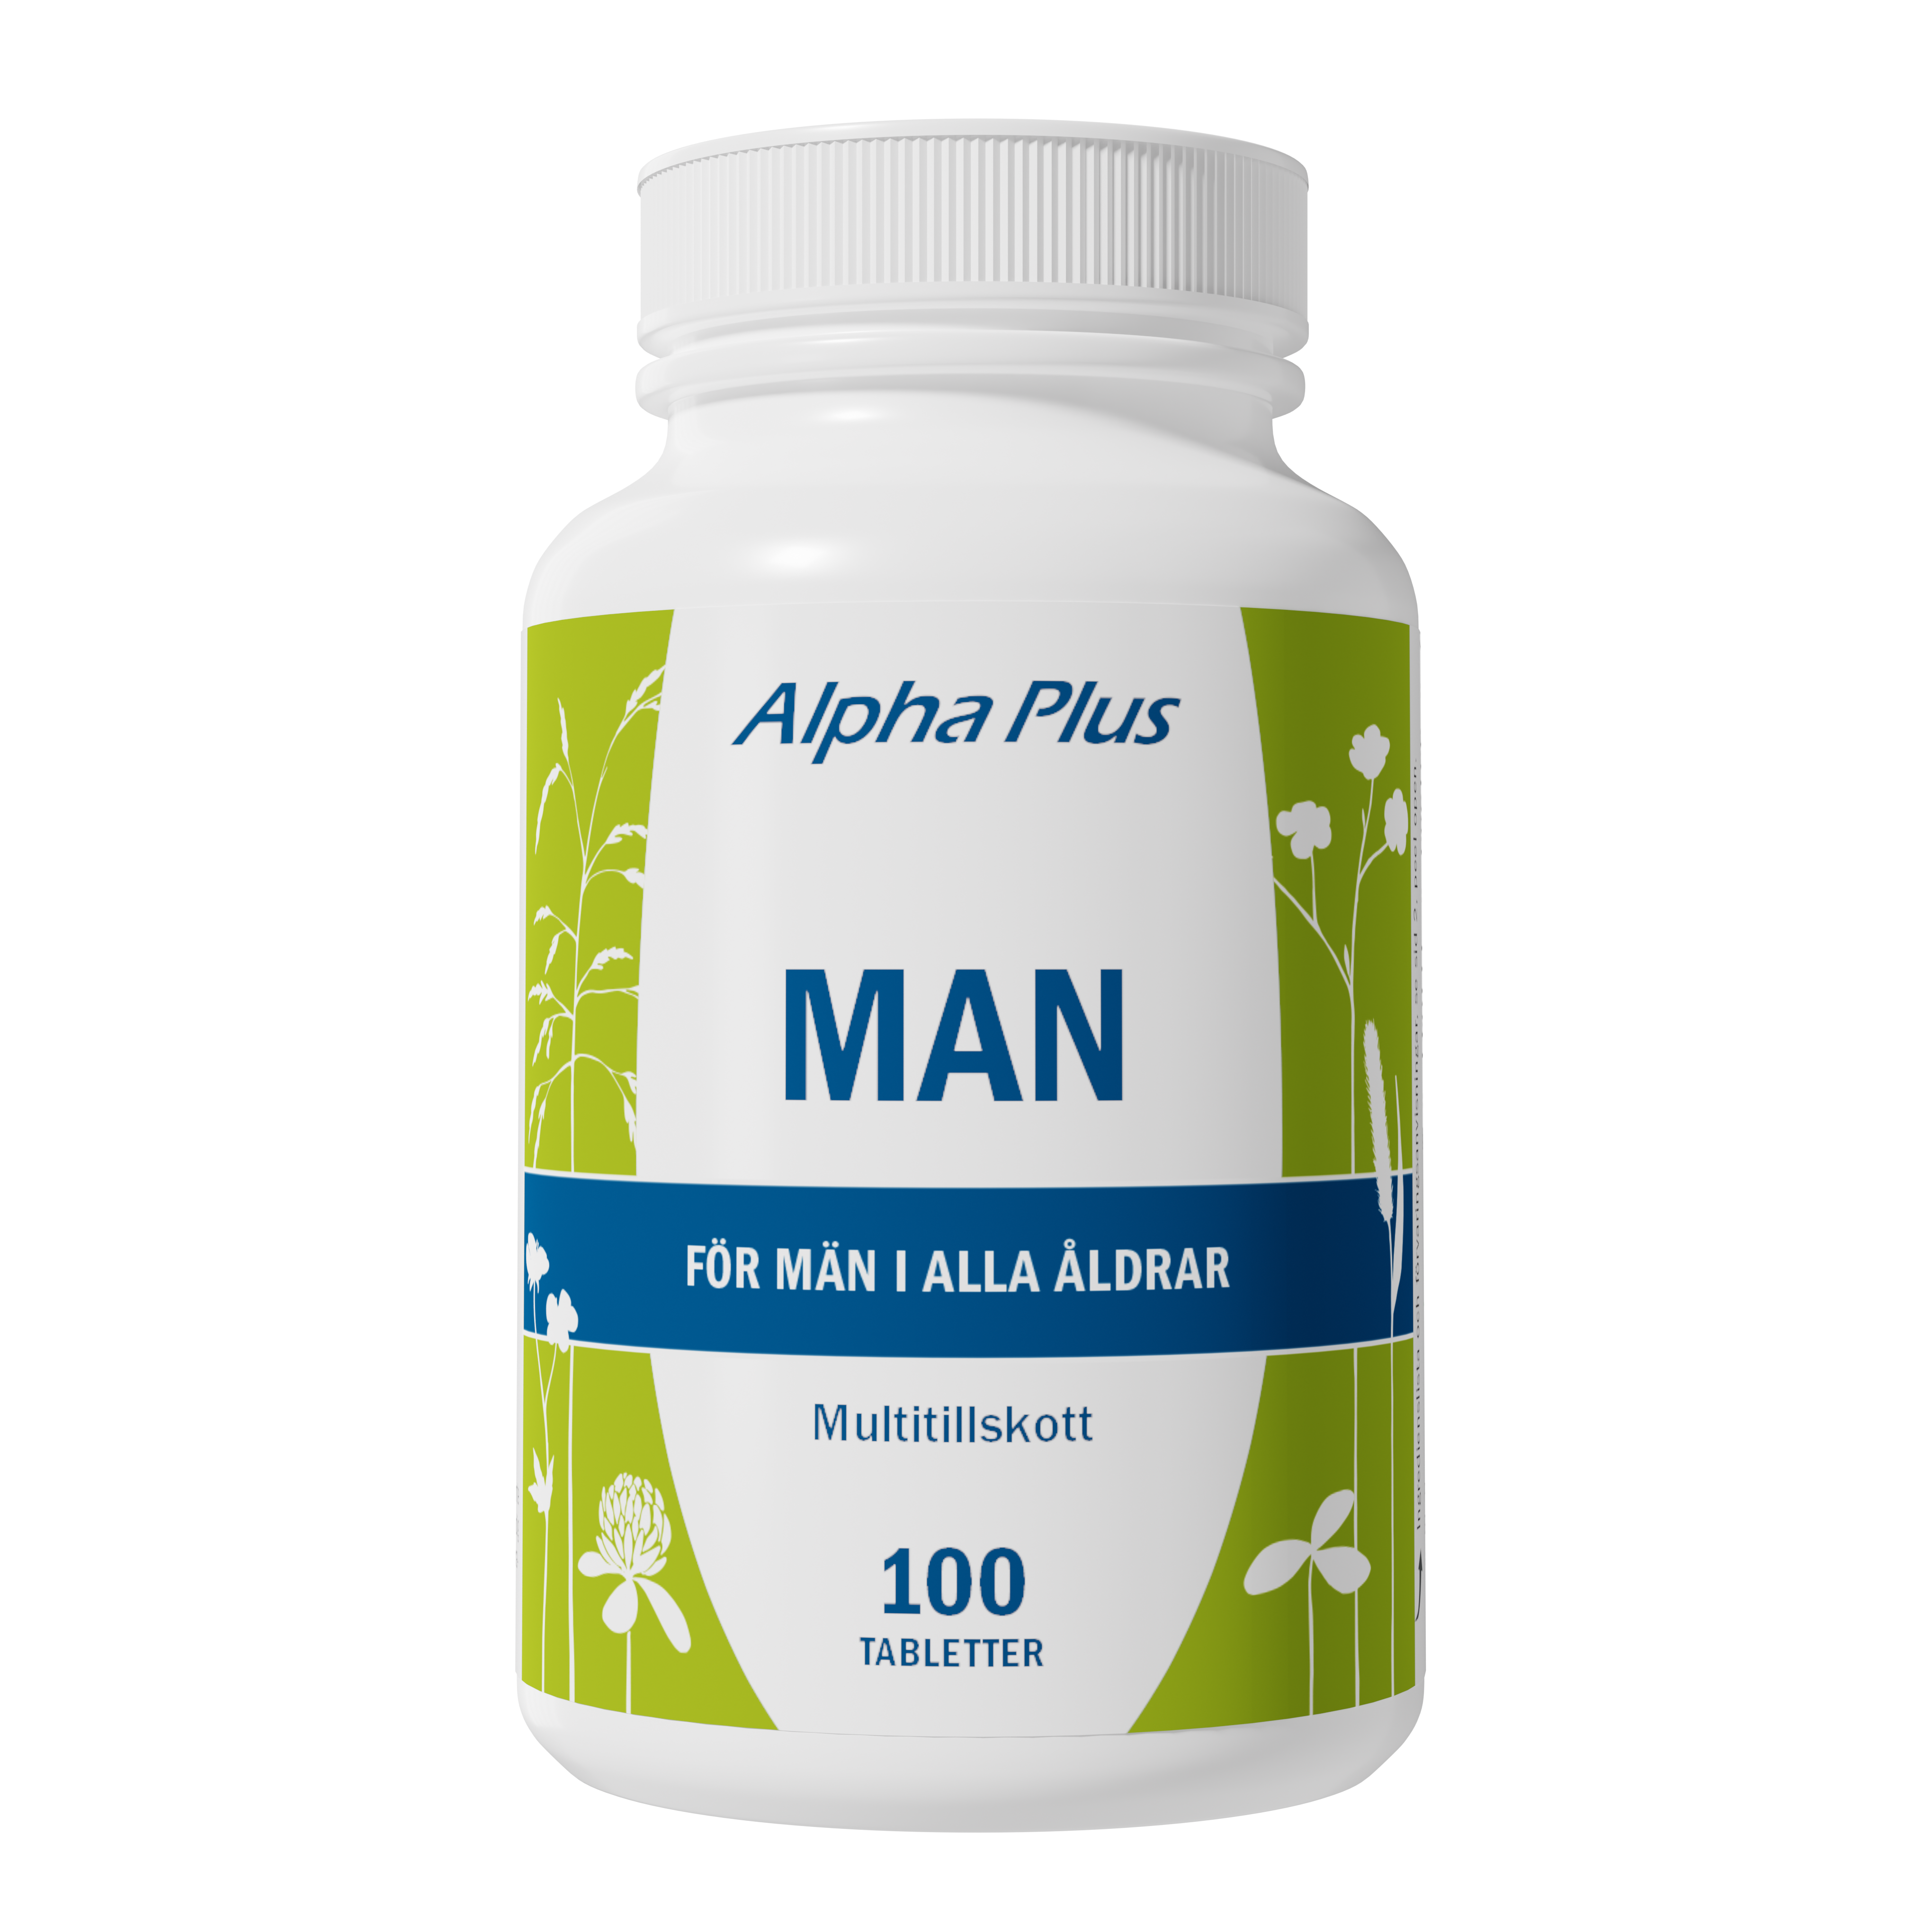 Alpha Plus Man Multitillskott 100 tabletter